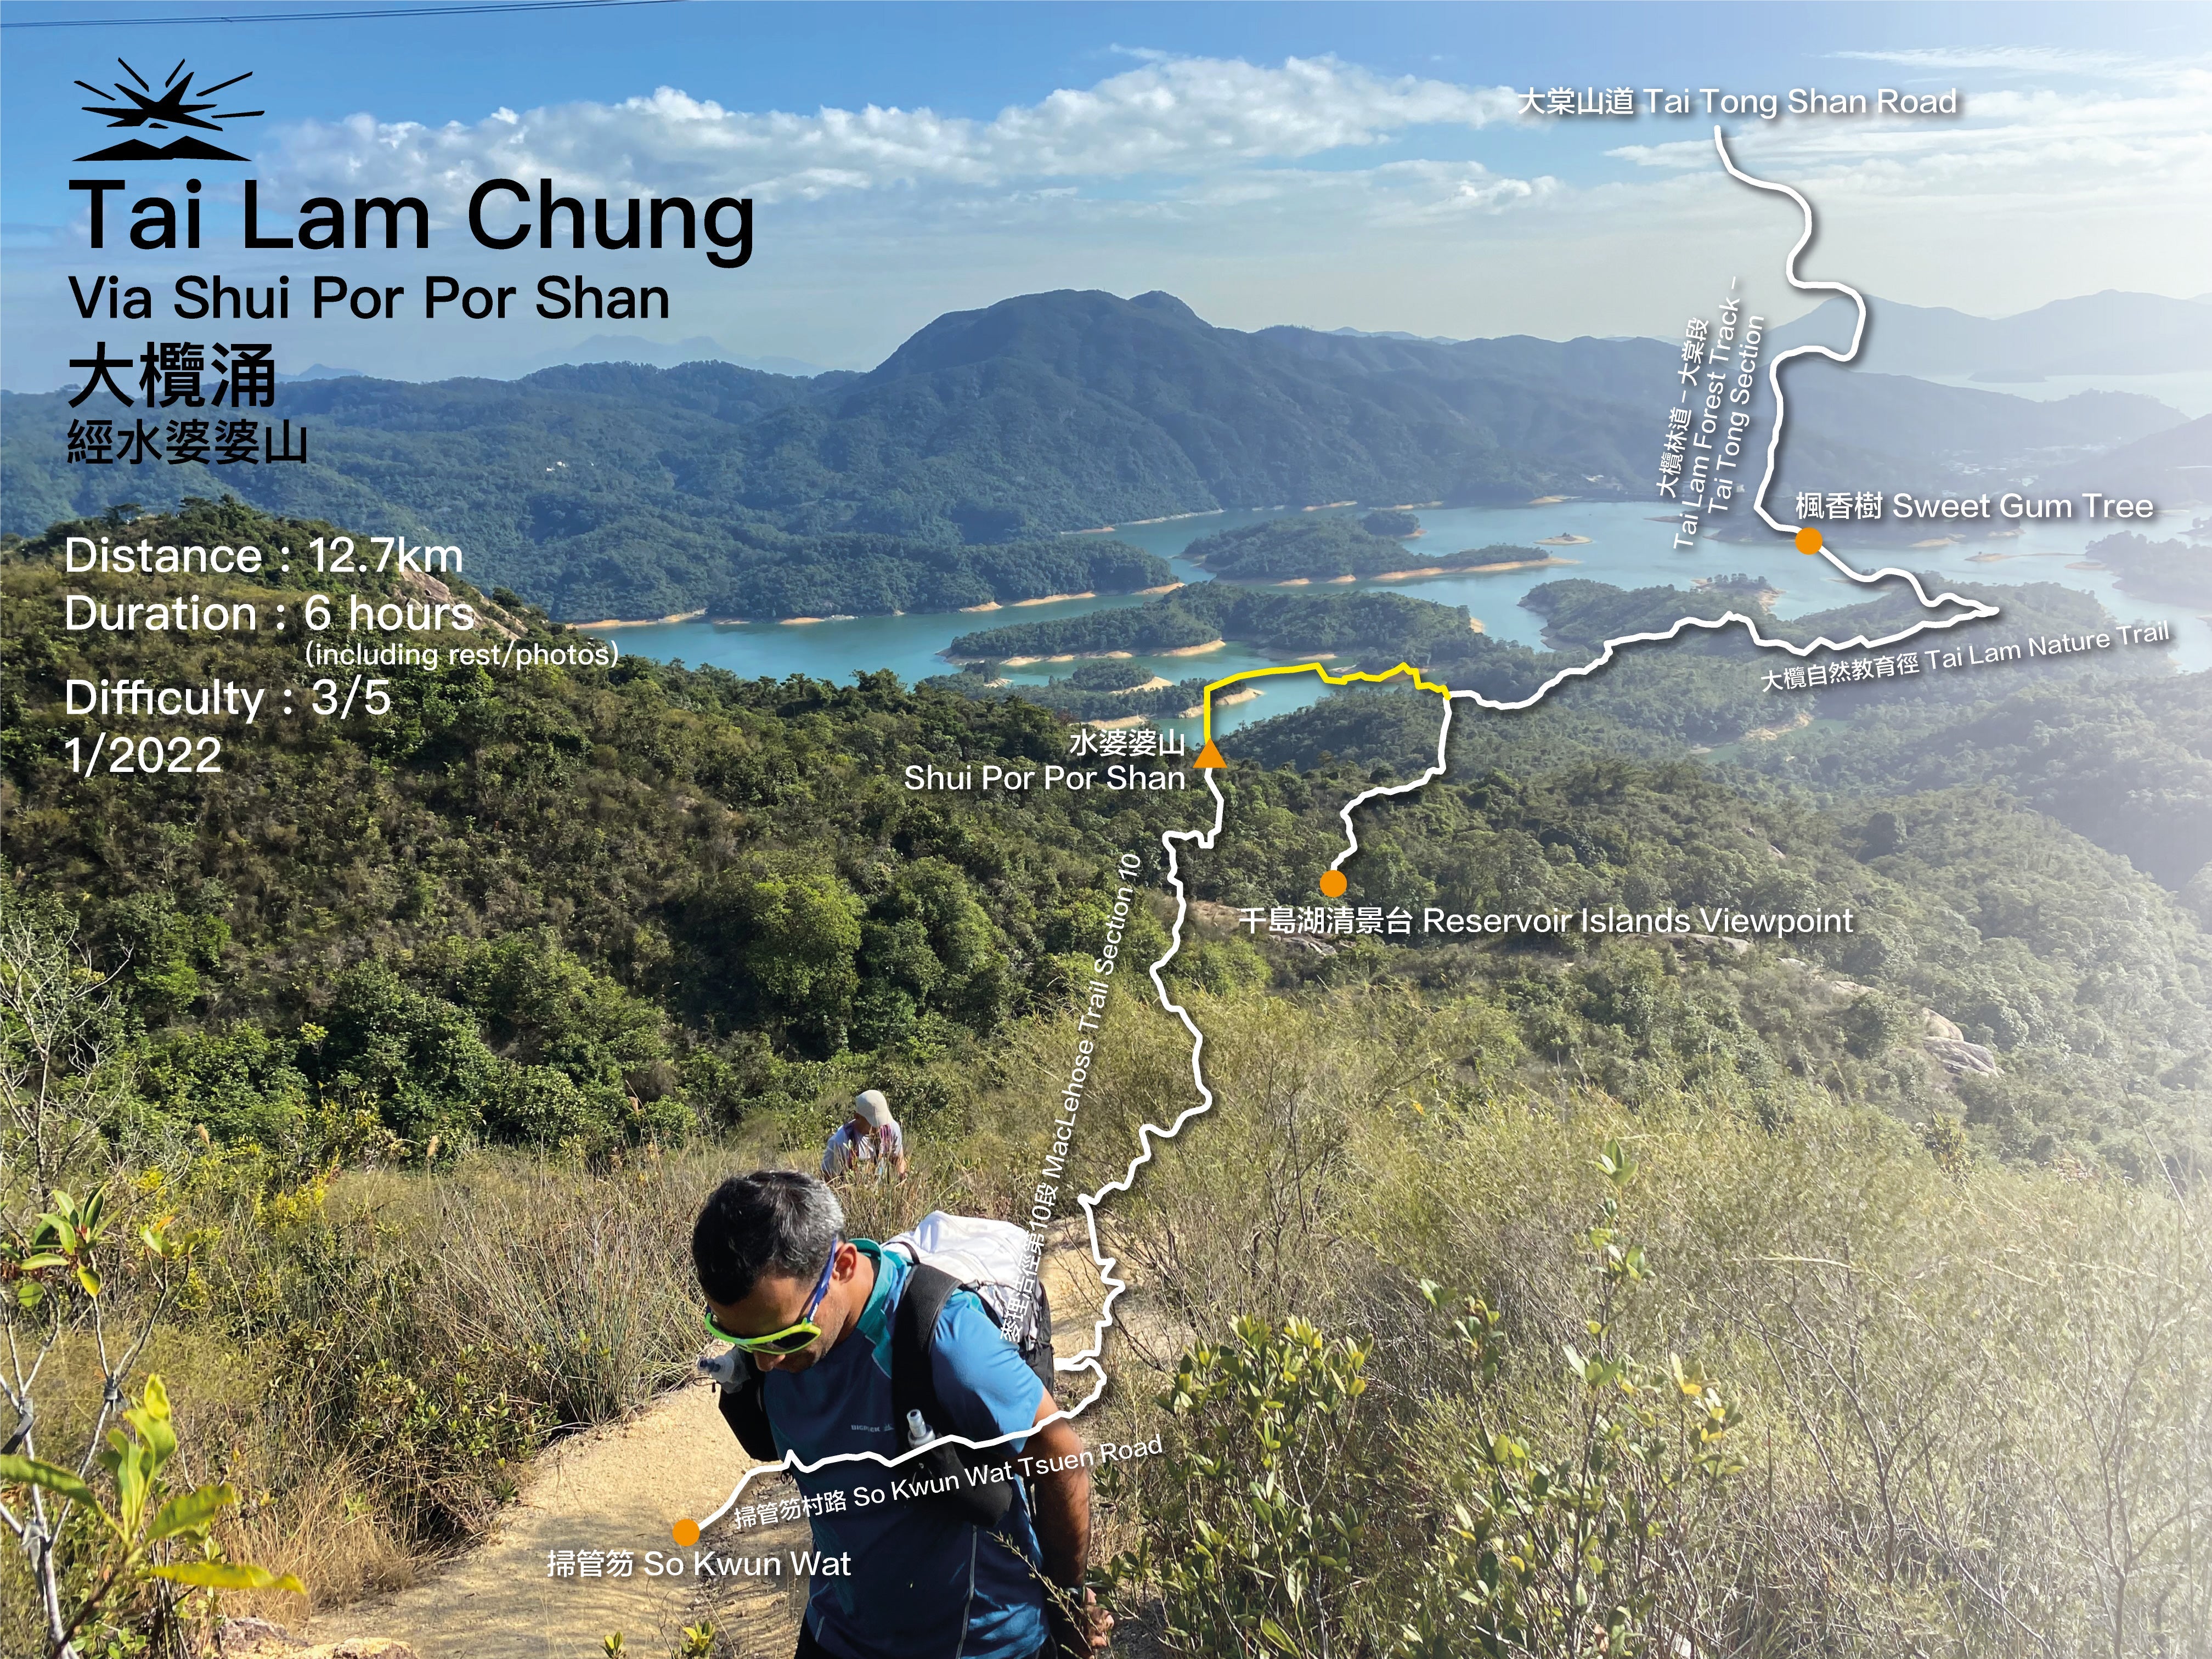 Tai Lam Chung Reservoir via Shui Por Por Shan